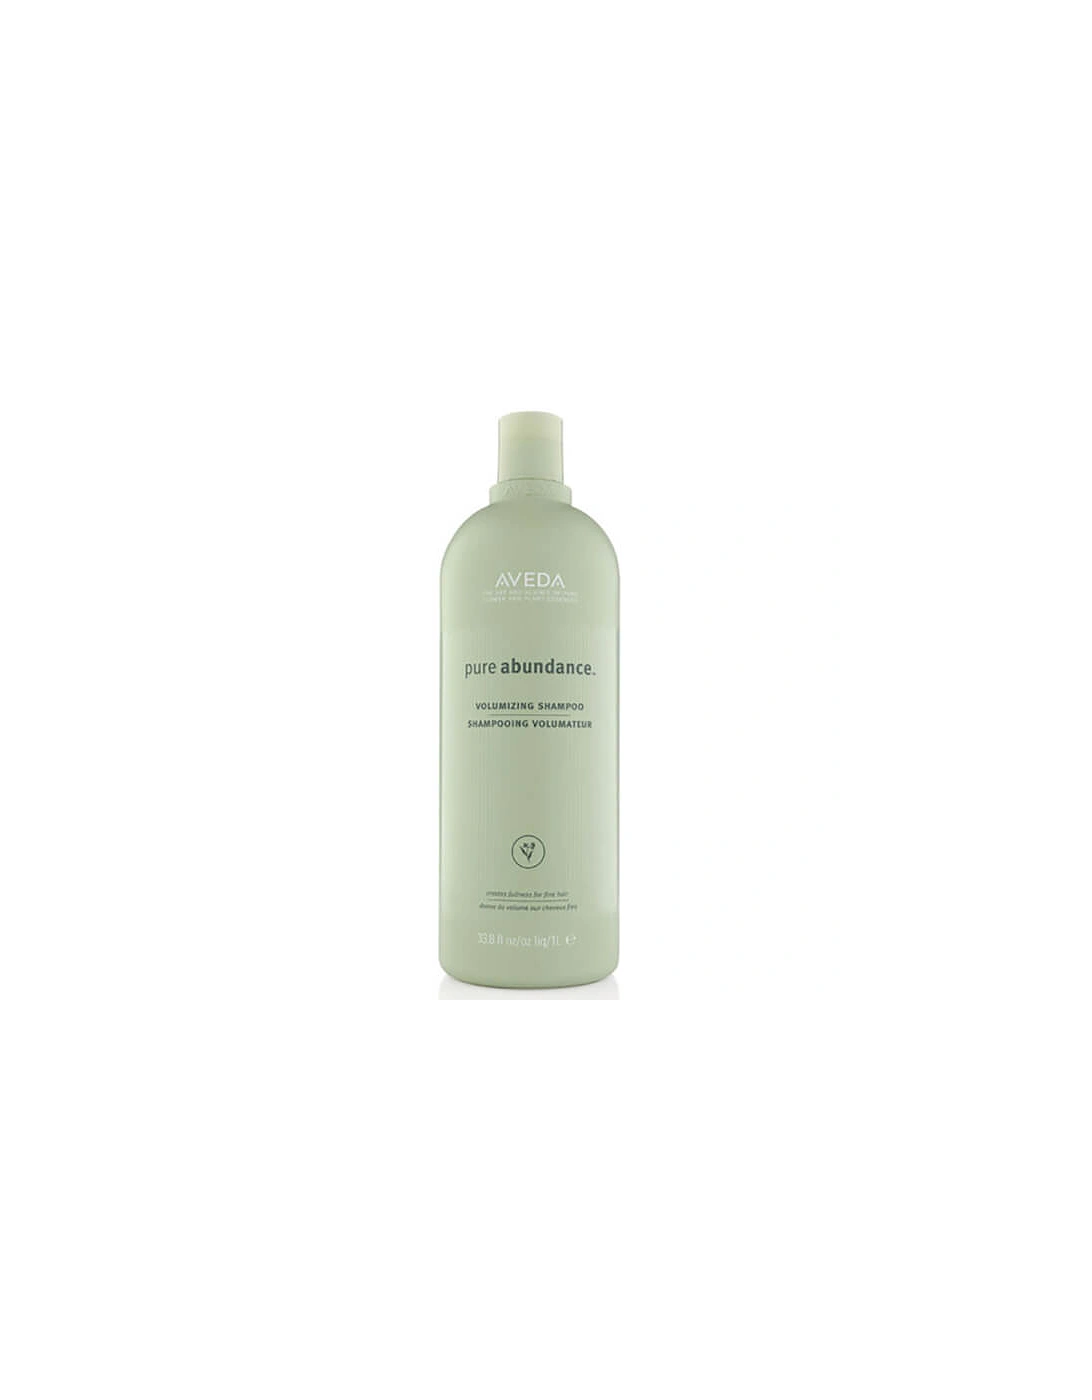 Pure Abundance Volumising Shampoo 1000ml - Aveda, 2 of 1